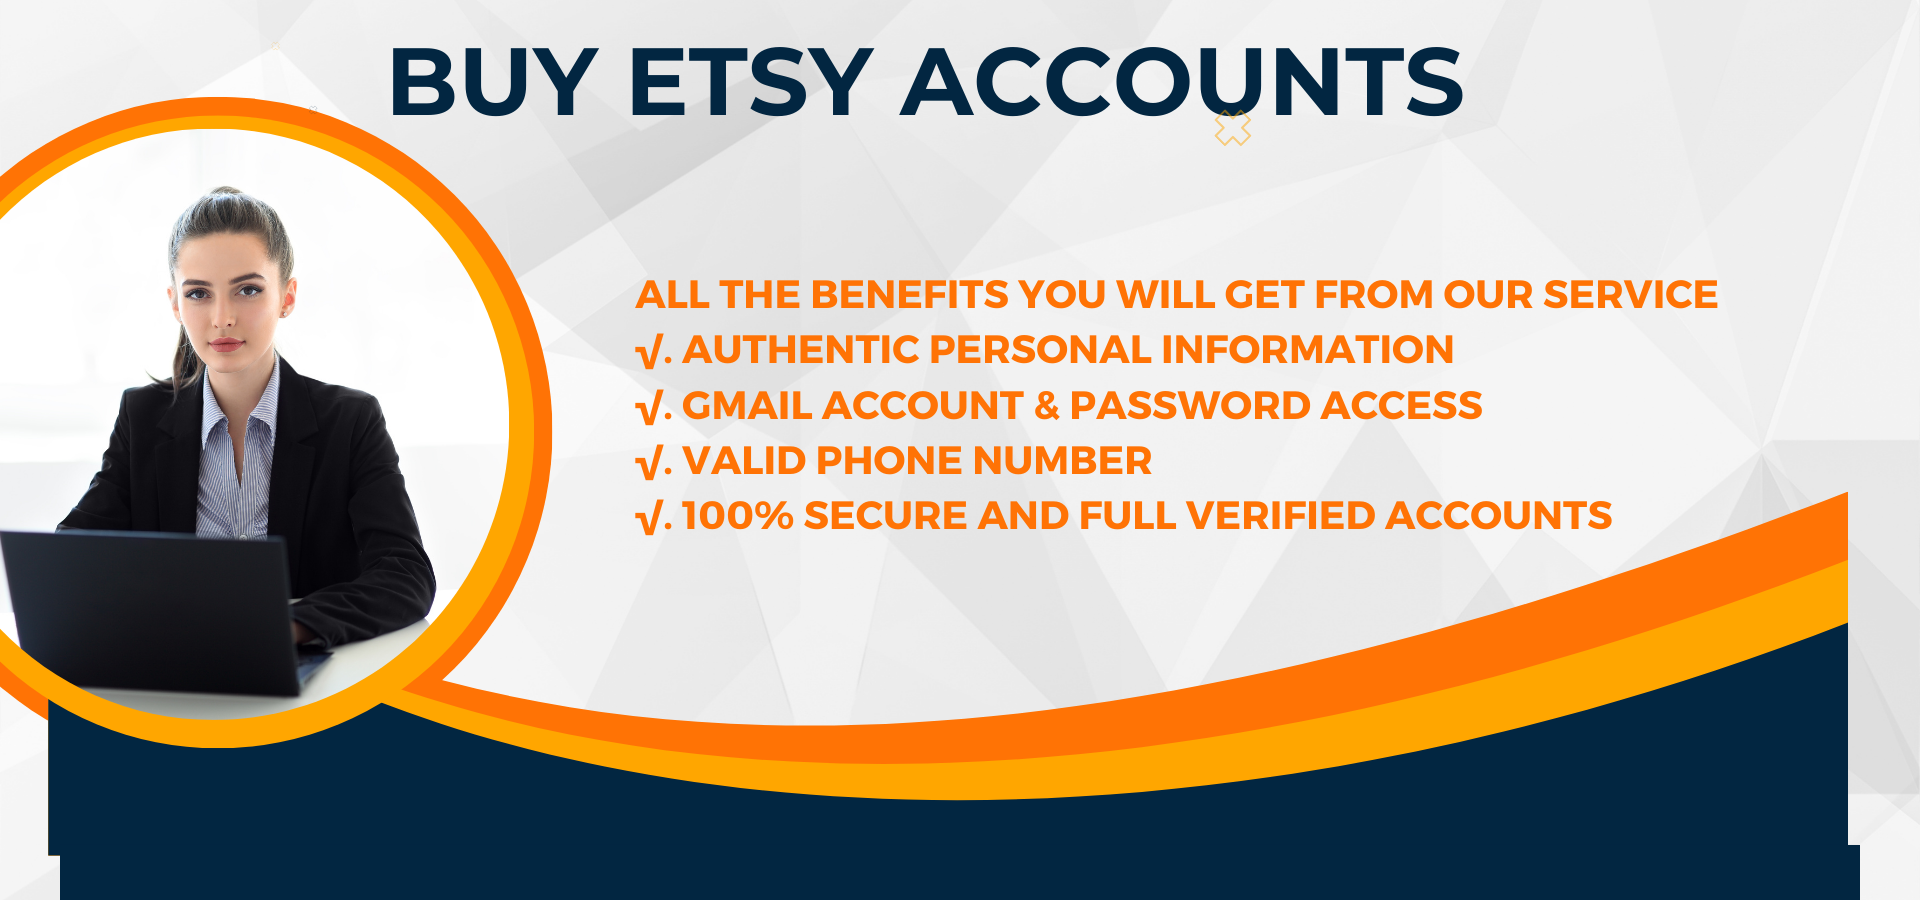 Buy Etsy Accounts 